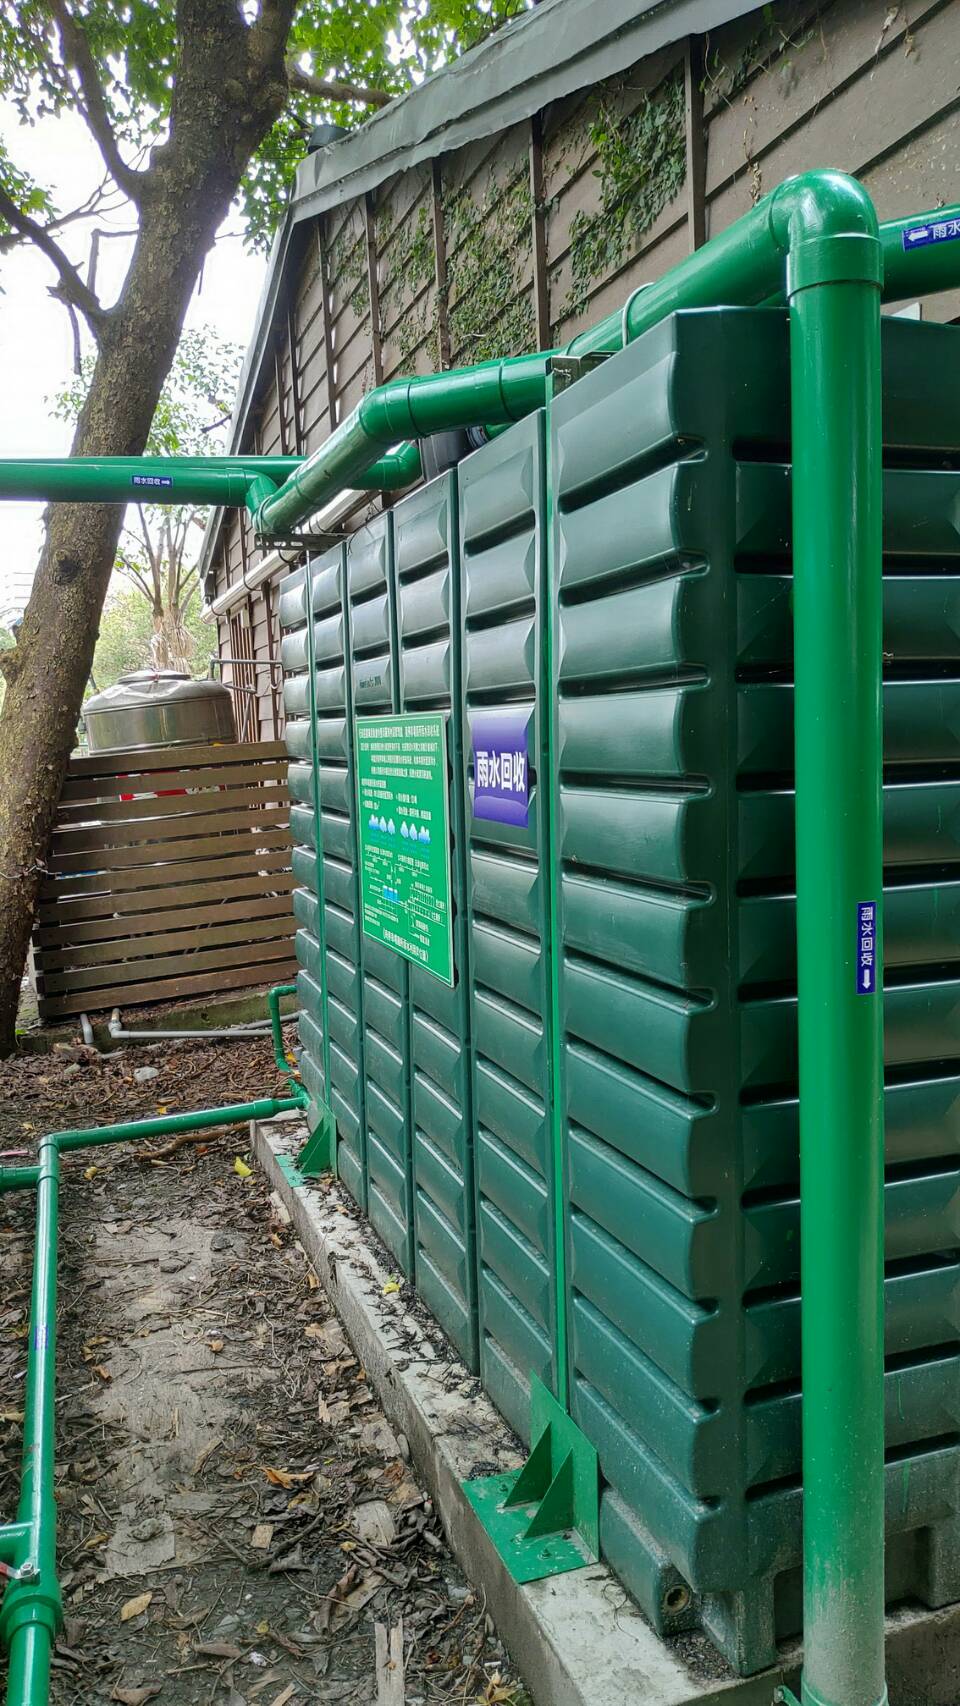 羅東林業園區建置雨水回收系統  每年收集雨水710 噸再利用